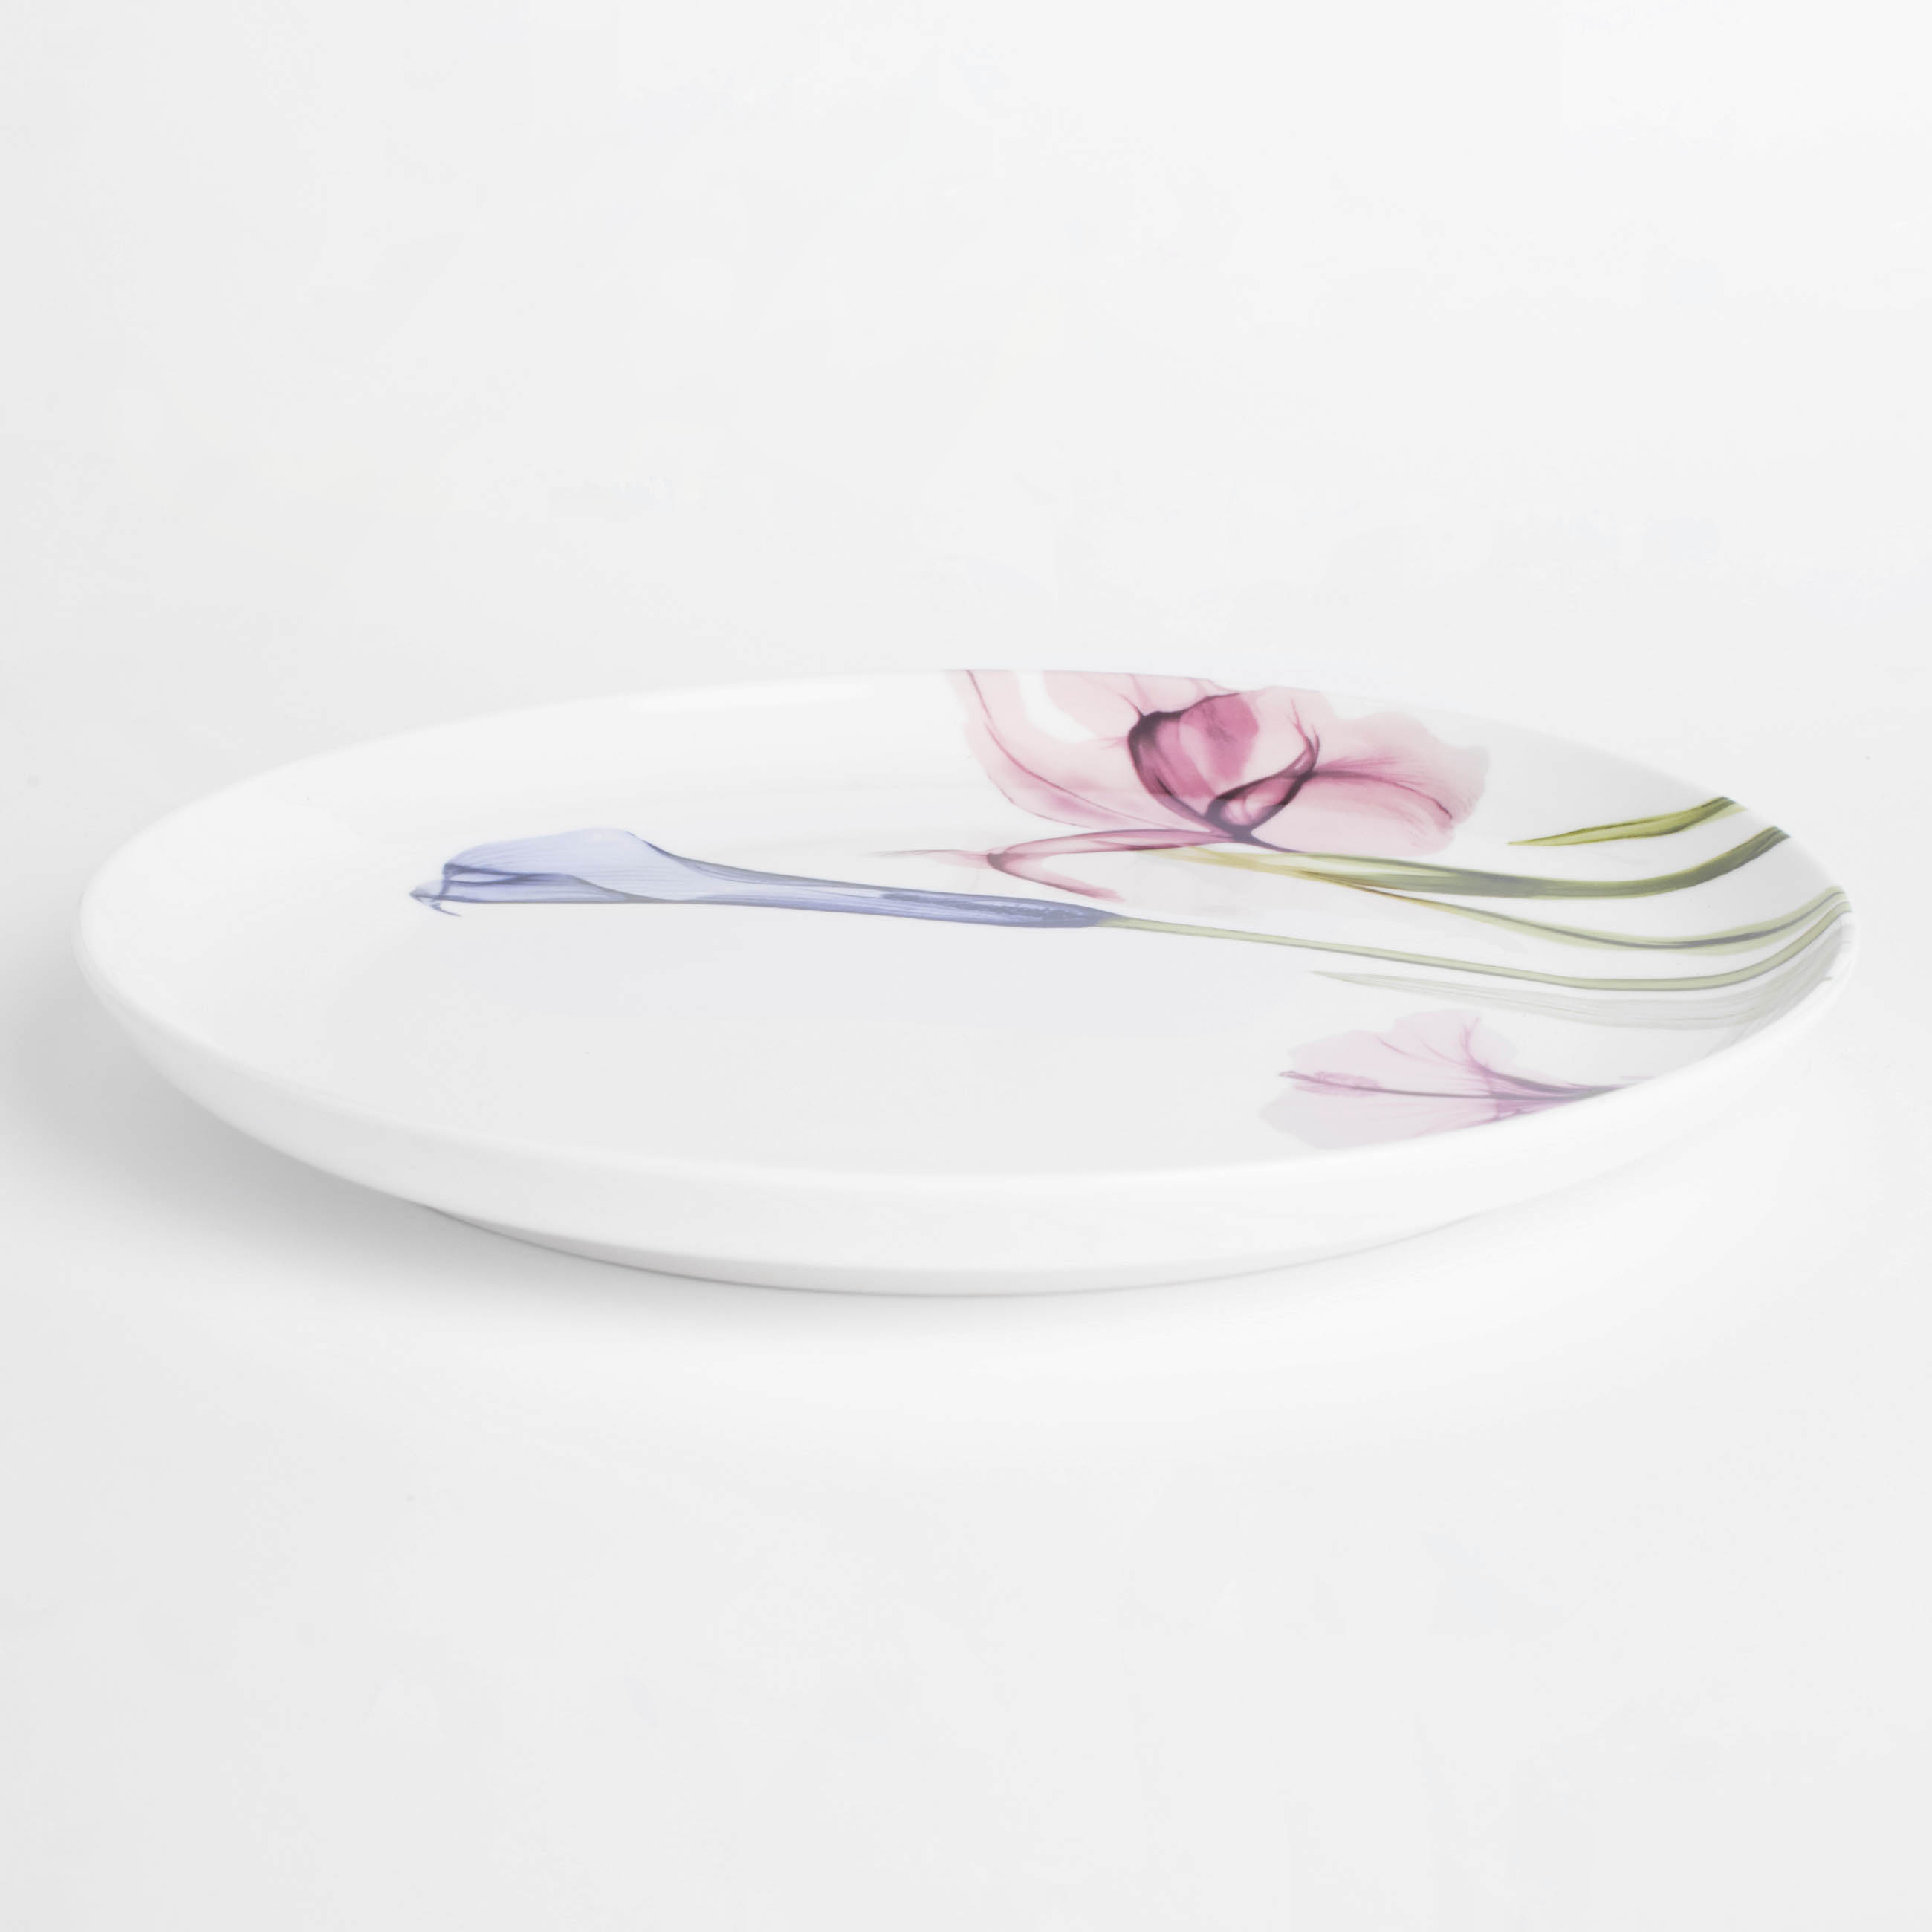 Тарелка обеденная, 27 см, фарфор N, белая, Пастельные цветы, Pastel flowers изображение № 3